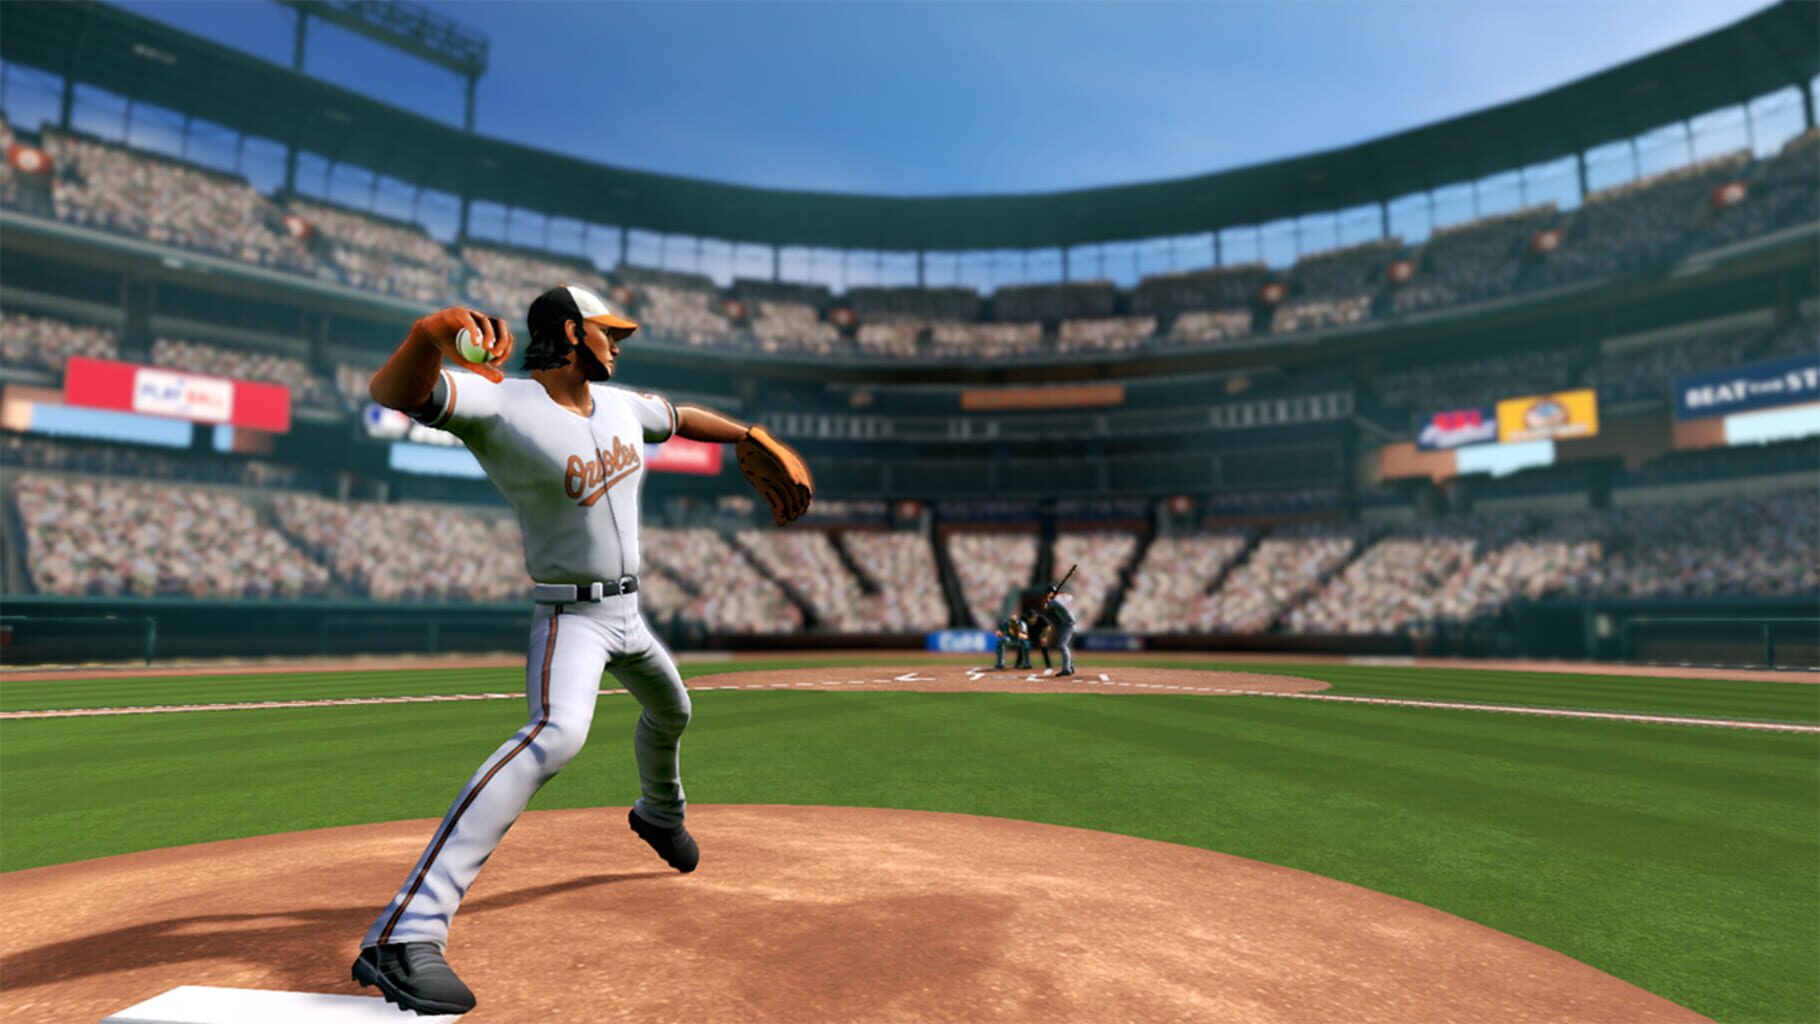 Captura de pantalla - R.B.I. Baseball 17